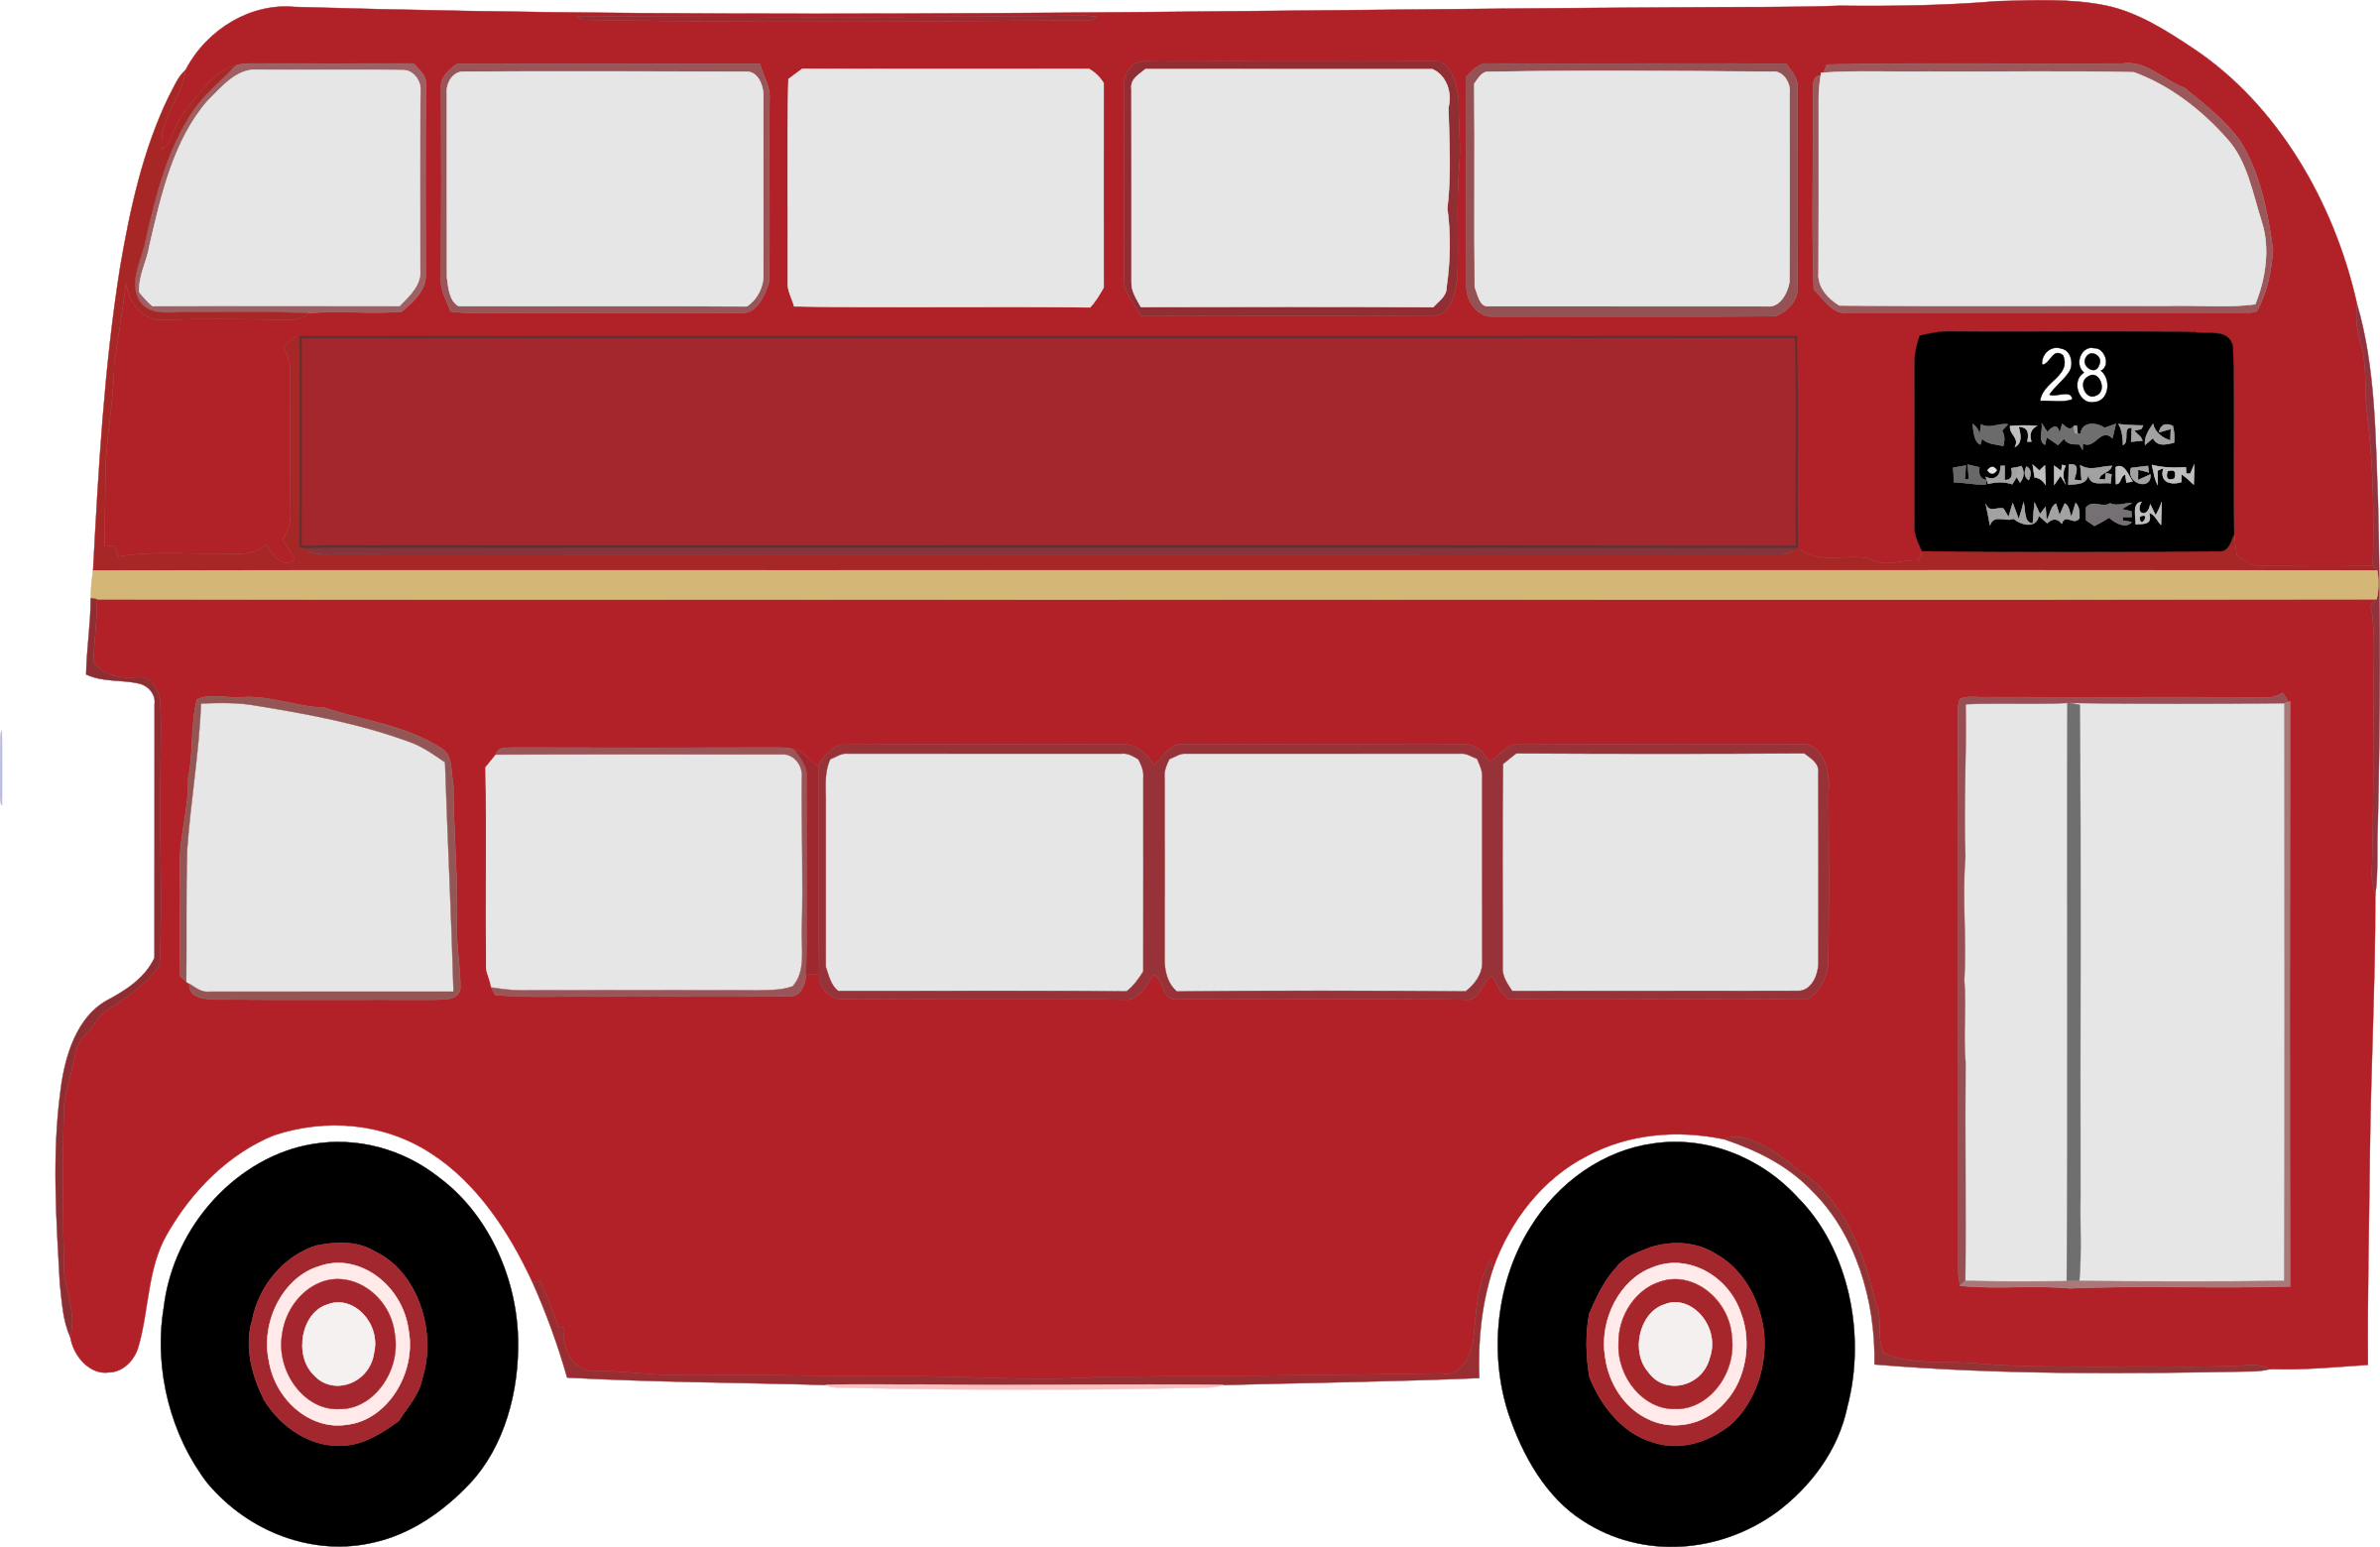 London clipart double decker bus, London double decker bus Transparent